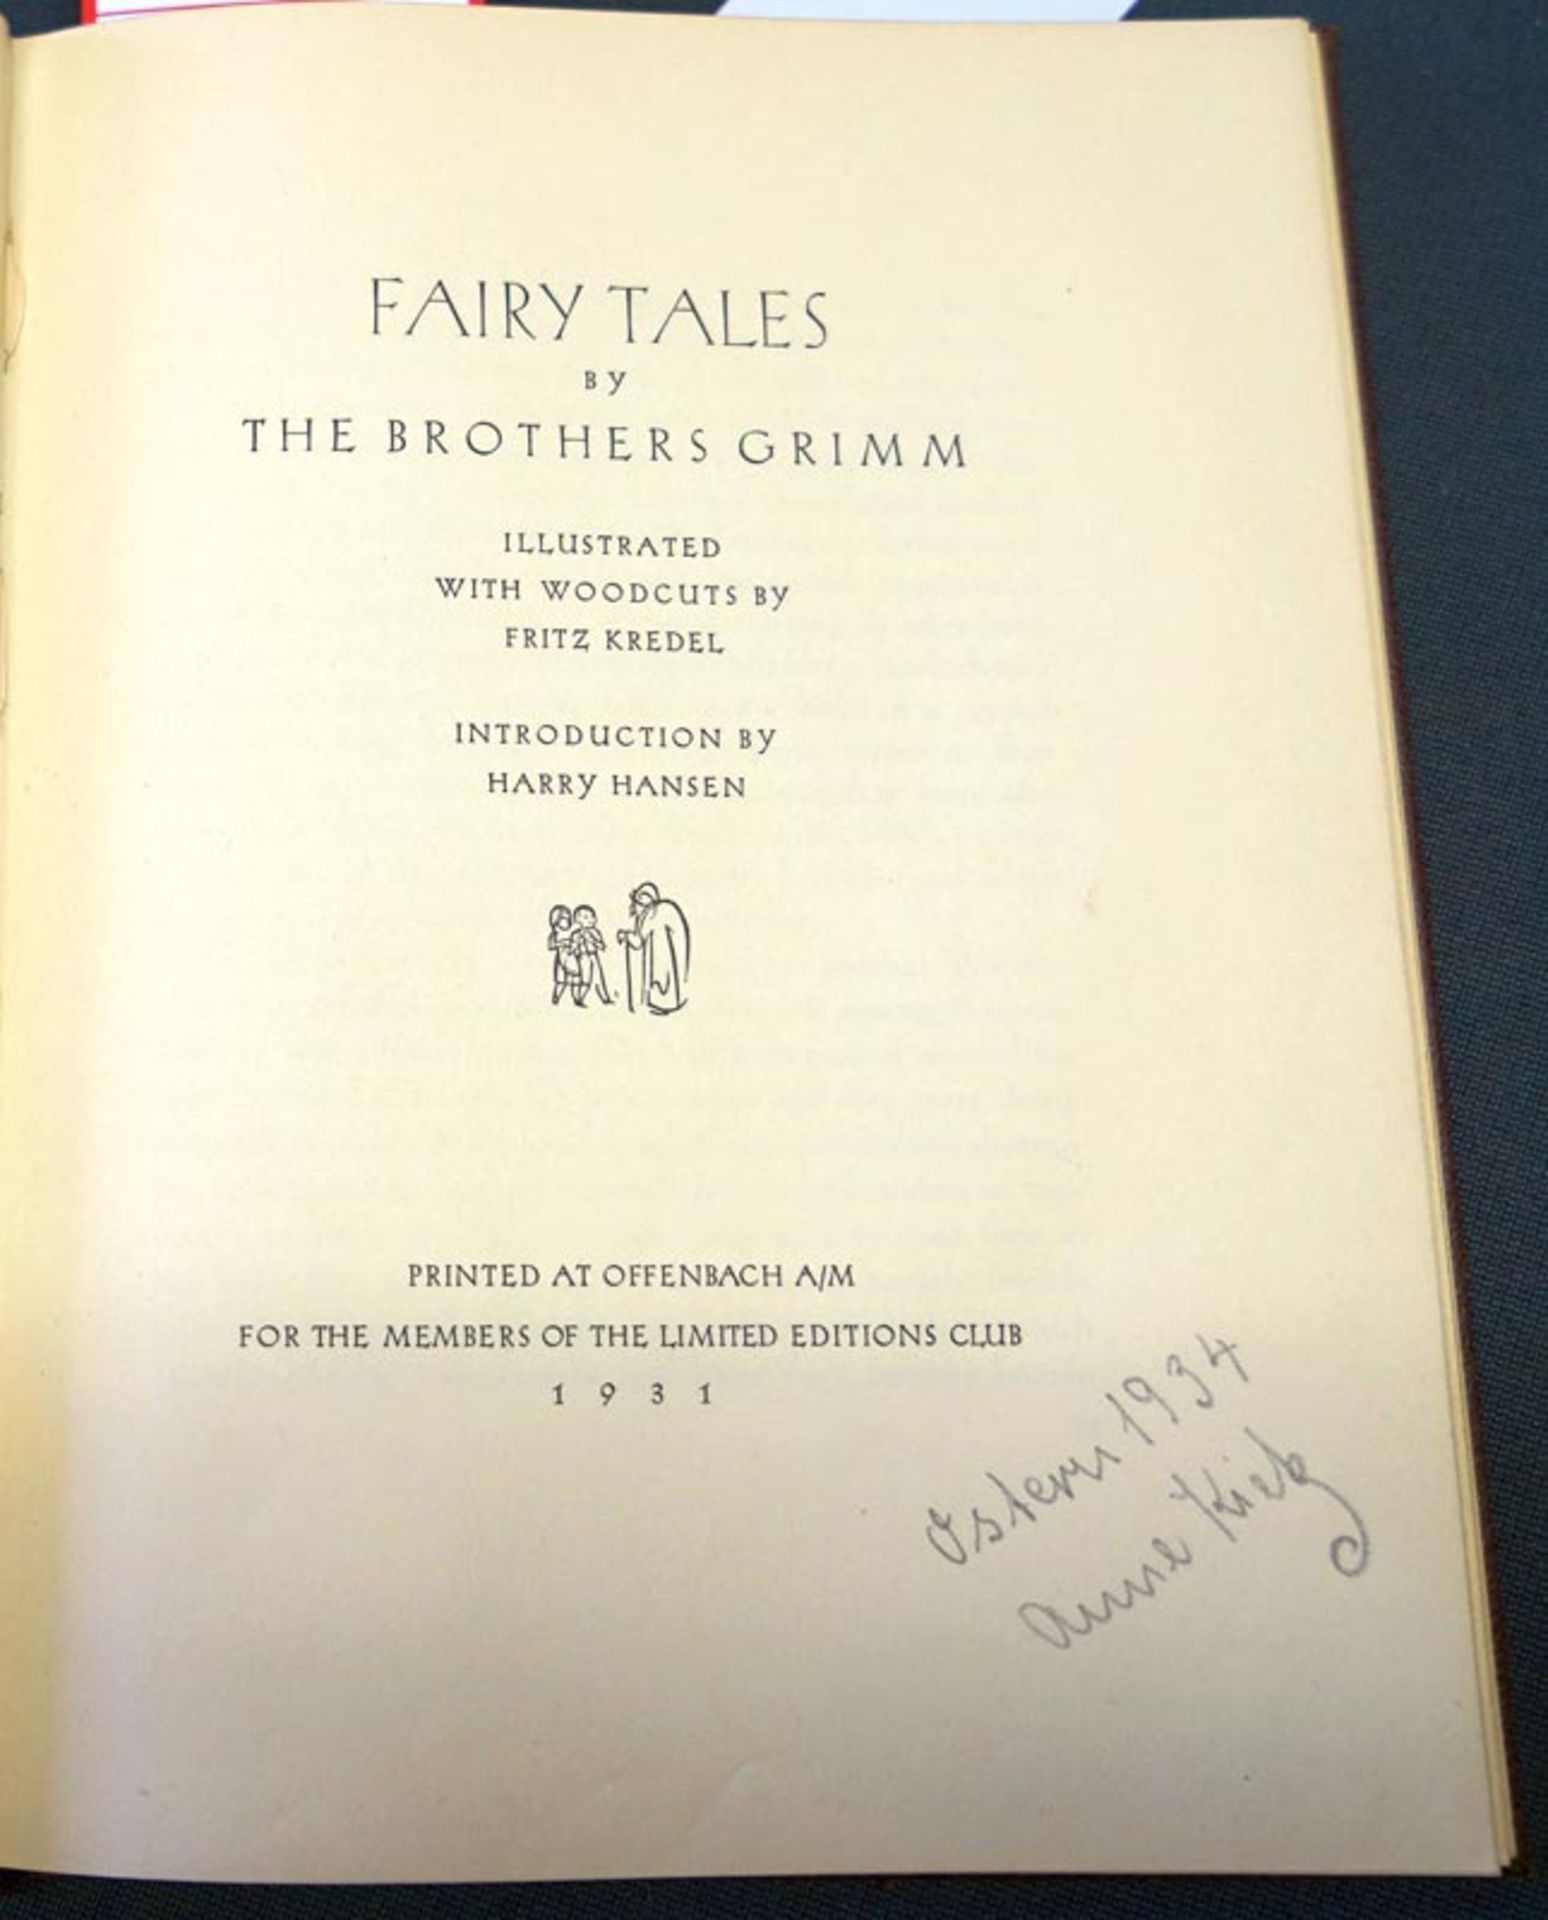 Grimm, Gebrüder und Kredel, Fritz - Illustr.: Fairy Tales